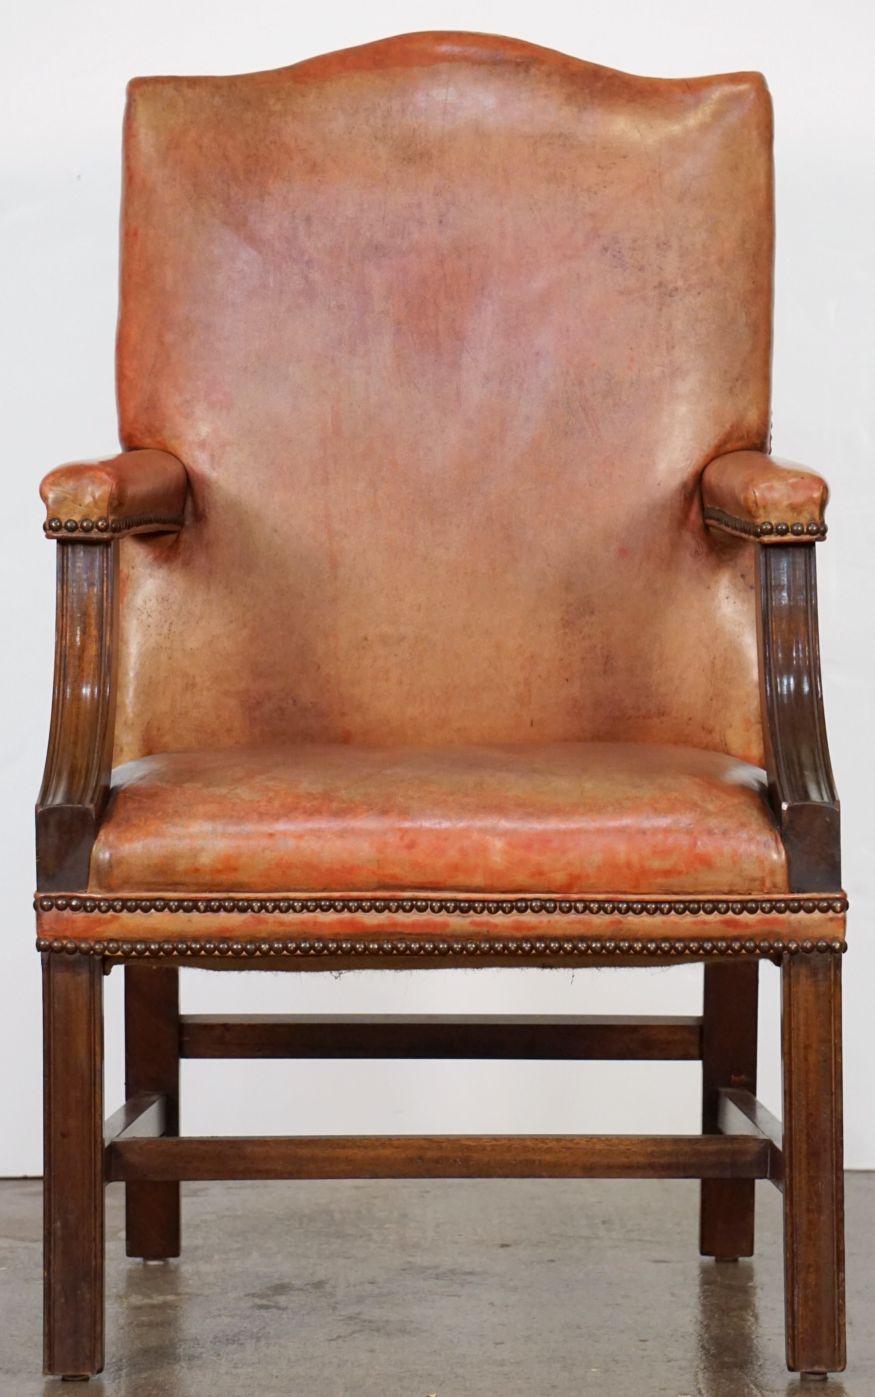 Fauteuil Gainsborough anglais en cuir et en acajou - avec un dossier haut, des côtés ouverts et des accoudoirs en forme, avec une large assise confortable, sur un châssis en acajou.
La sellerie en cuir est ornée d'une garniture de têtes de clous en